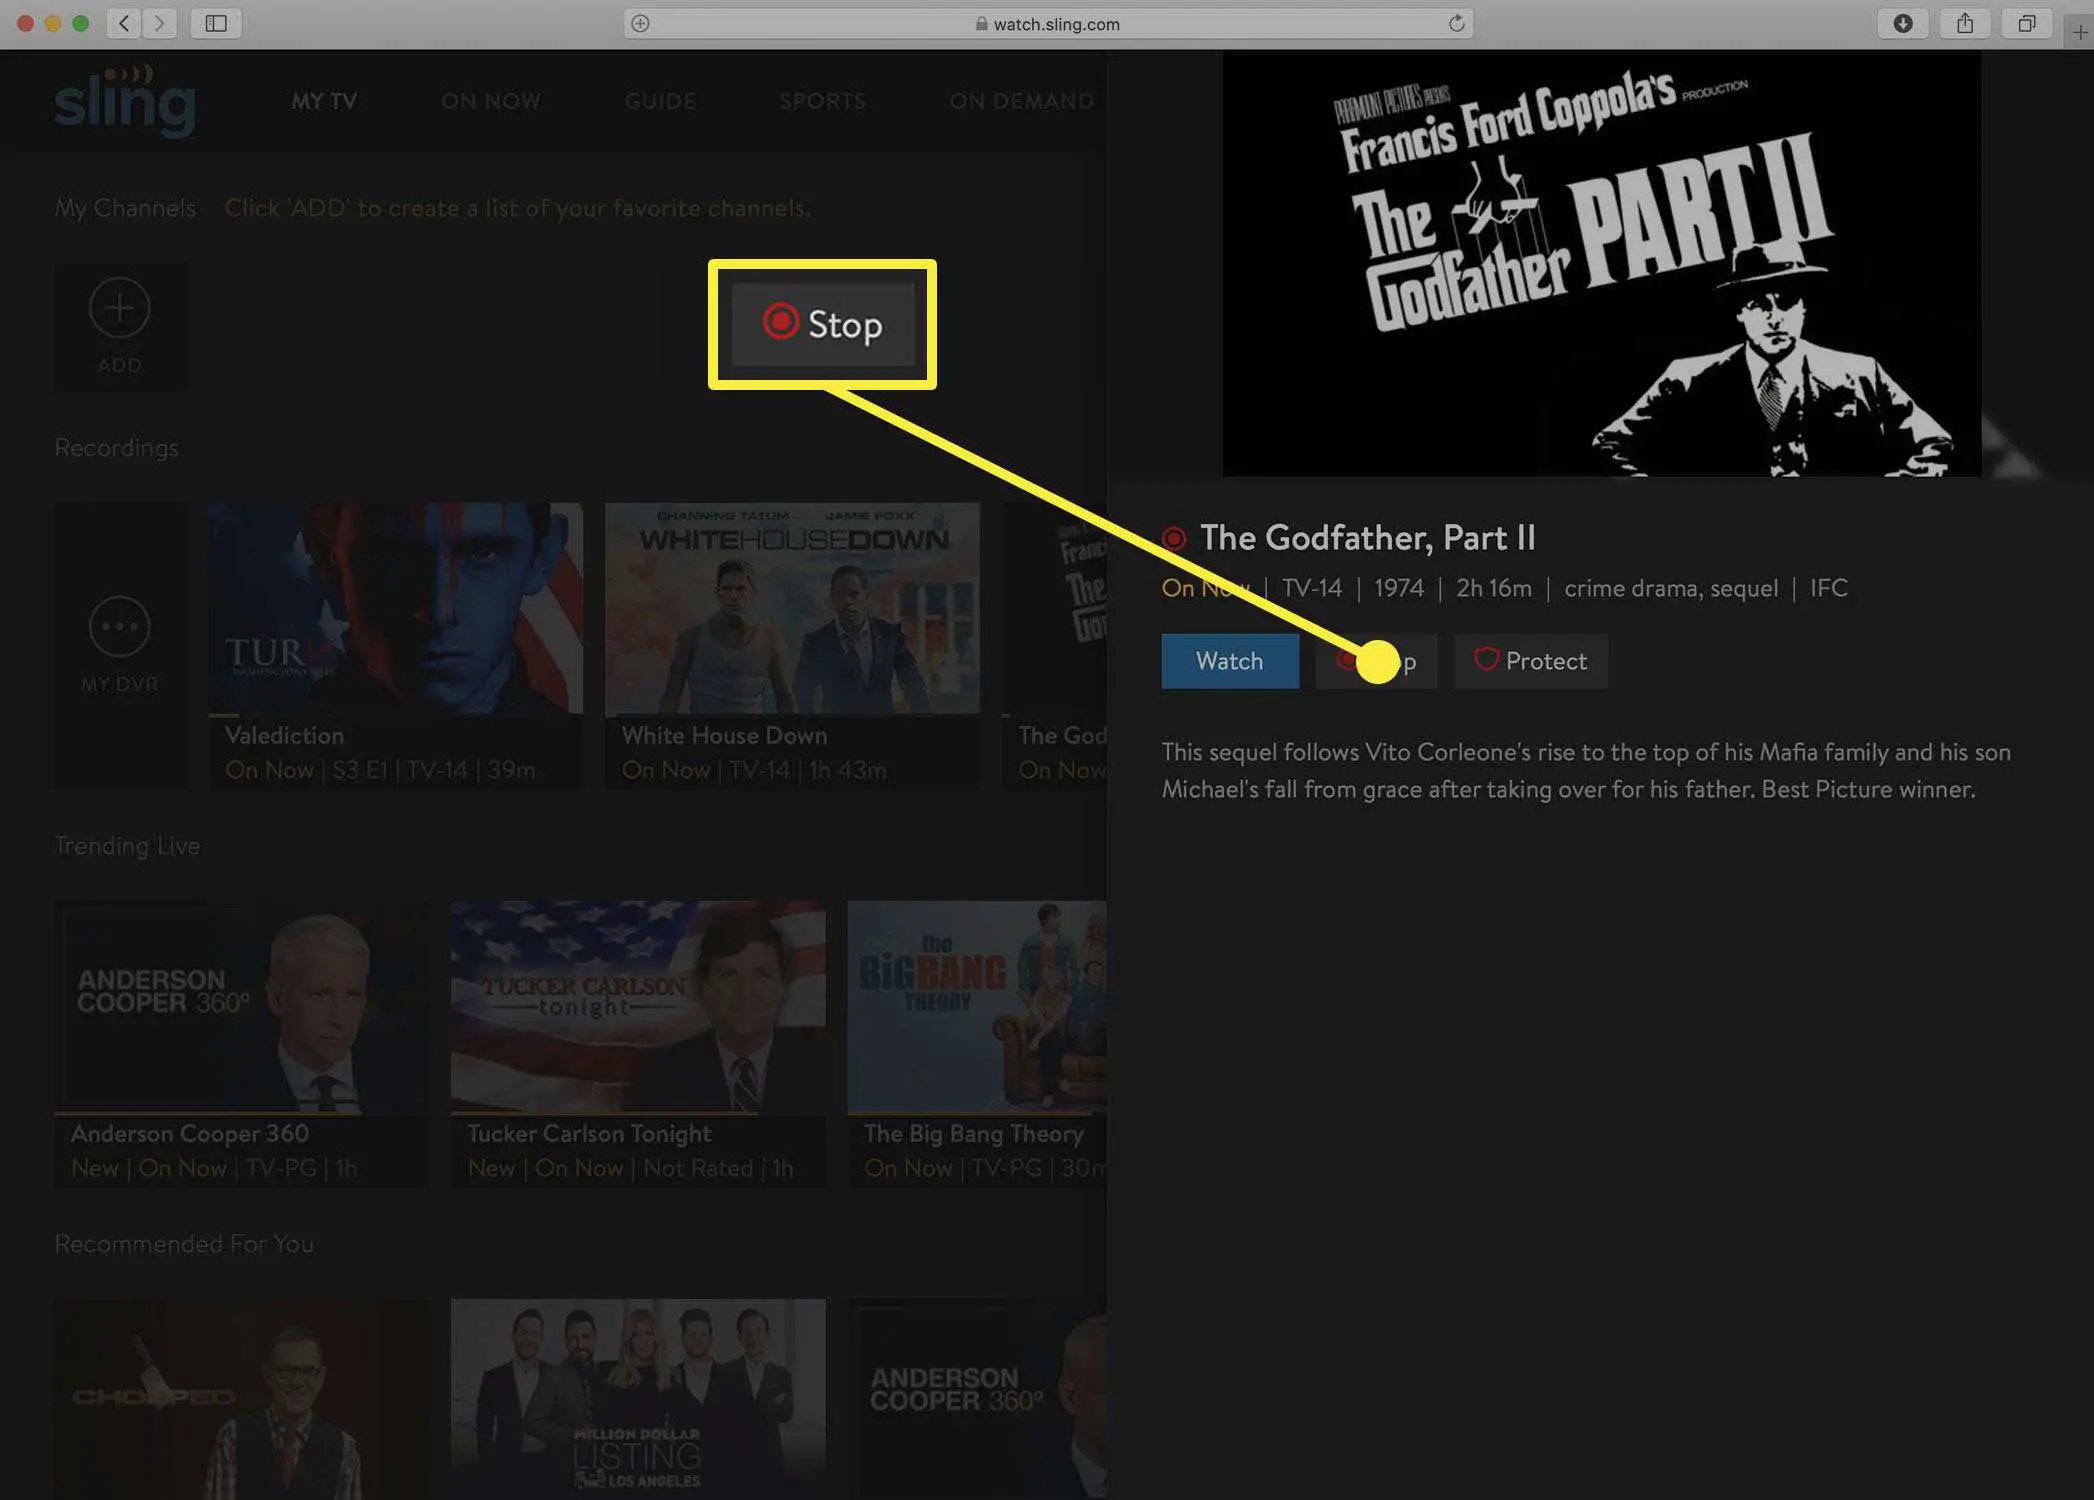 Captura de tela do botão Sling TV para interromper uma gravação de DVR.